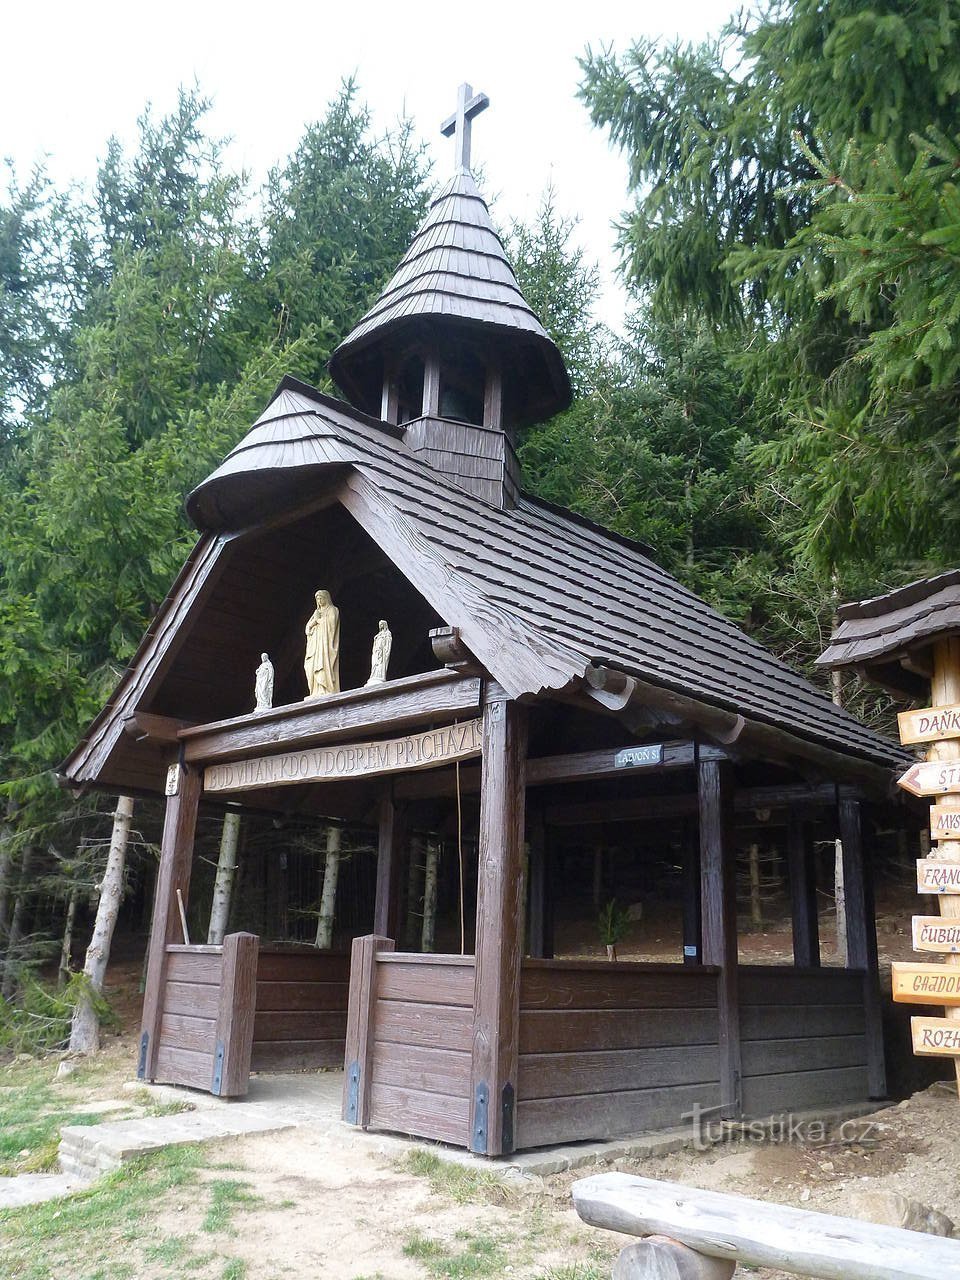 Een houten kapel met een bel en ongebruikelijk